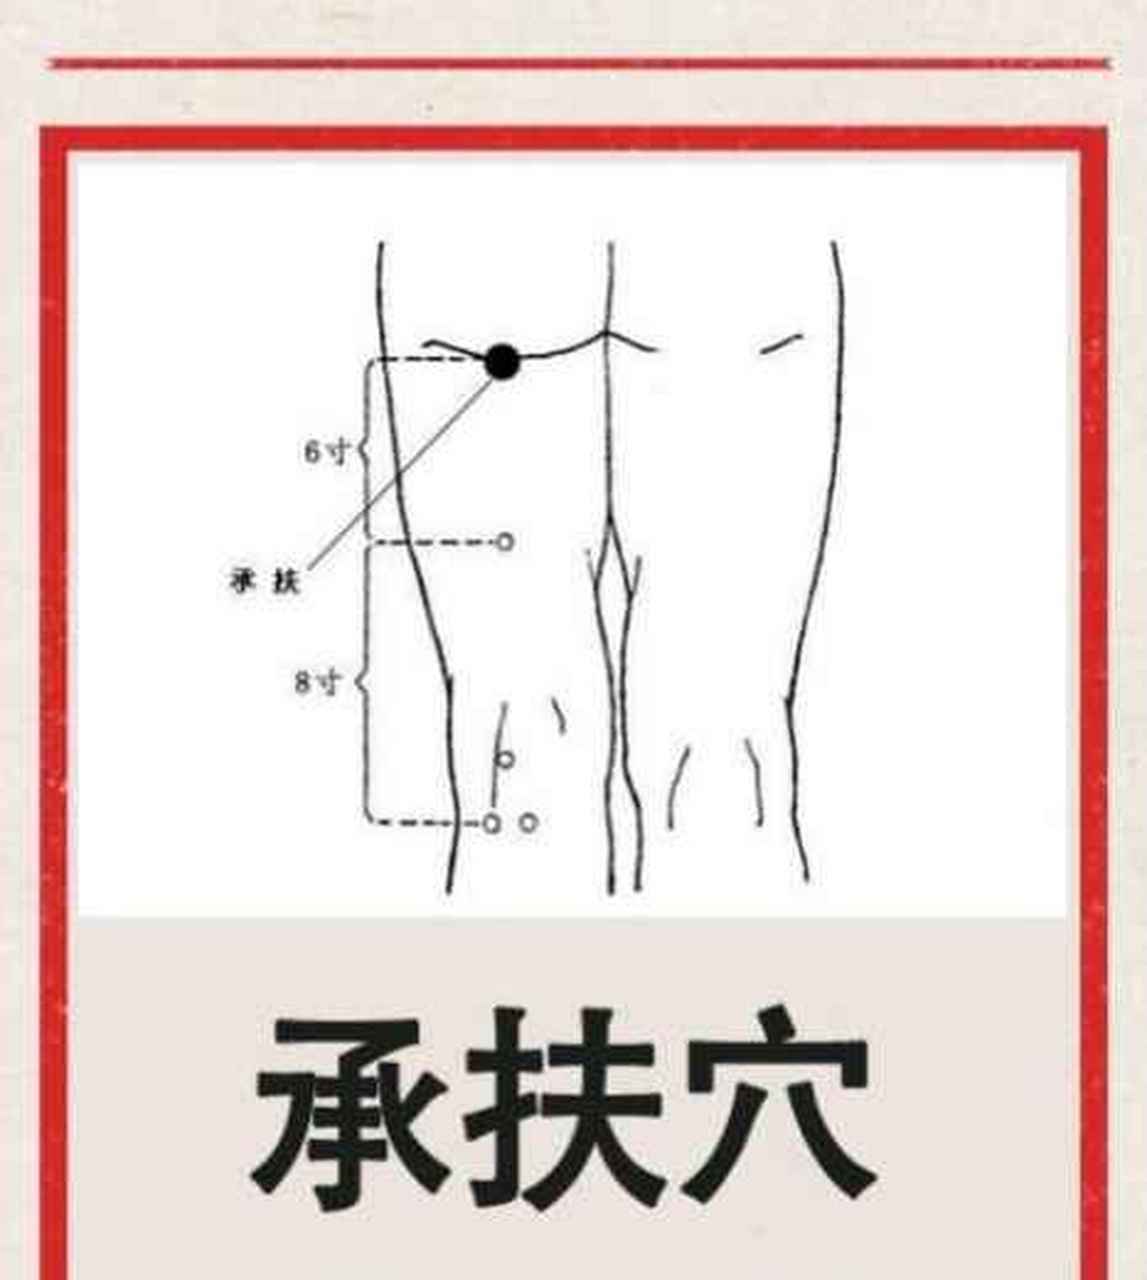 【每日一穴·承扶穴【位置】承扶穴位于臀部横纹线的中央下方.